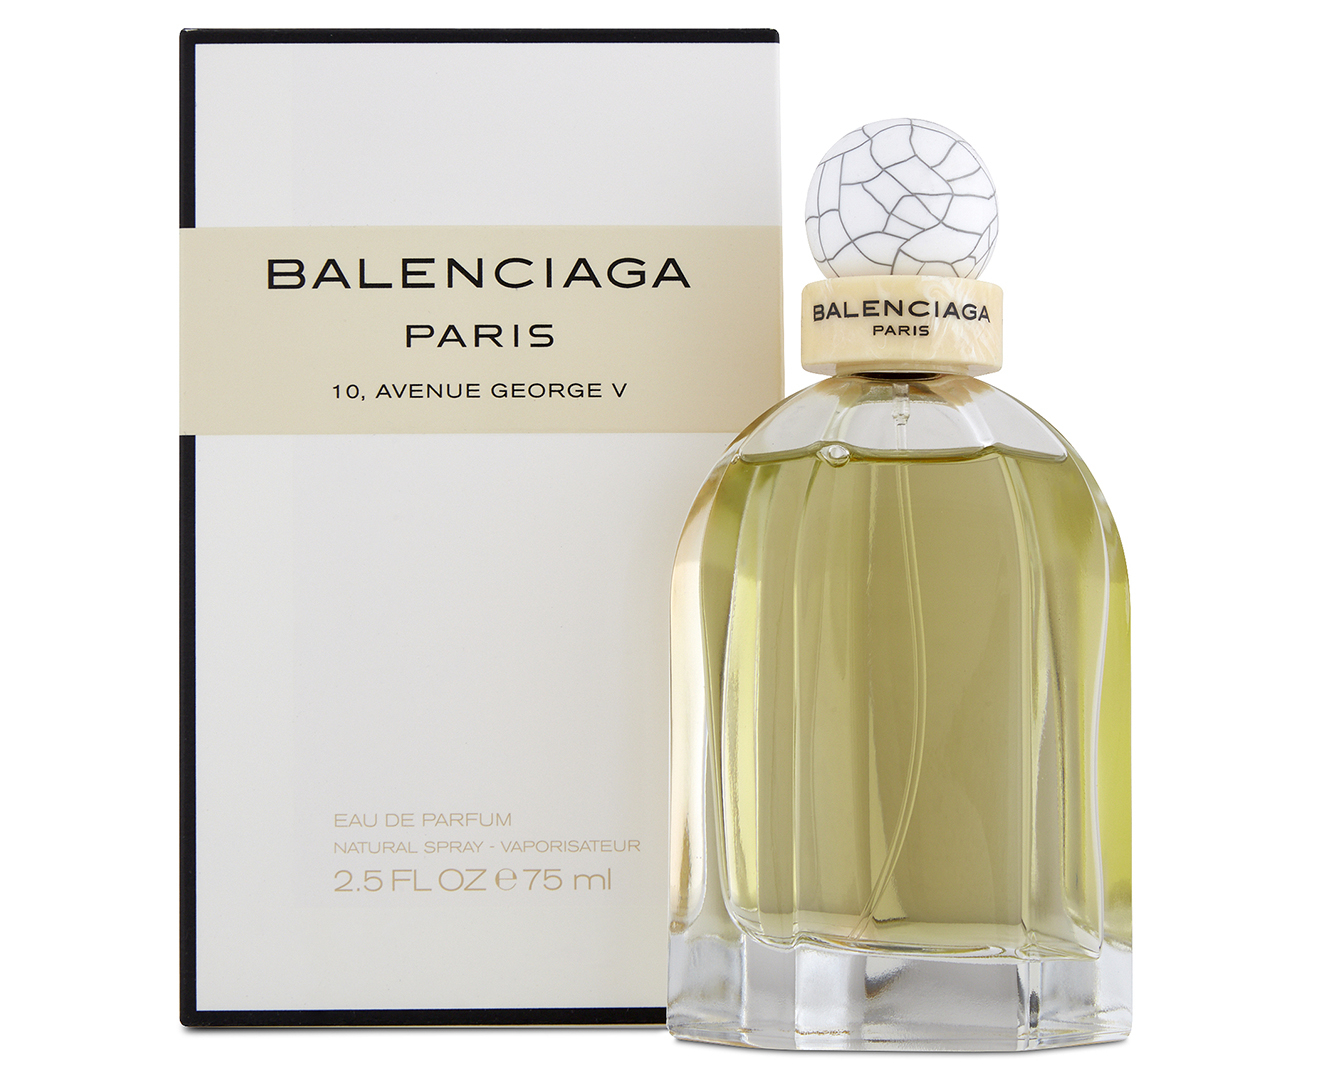 Balenciaga Paris 10Avenue George V Gift Set Eau De Parfum Spray 25 oz New  RARE  eBay